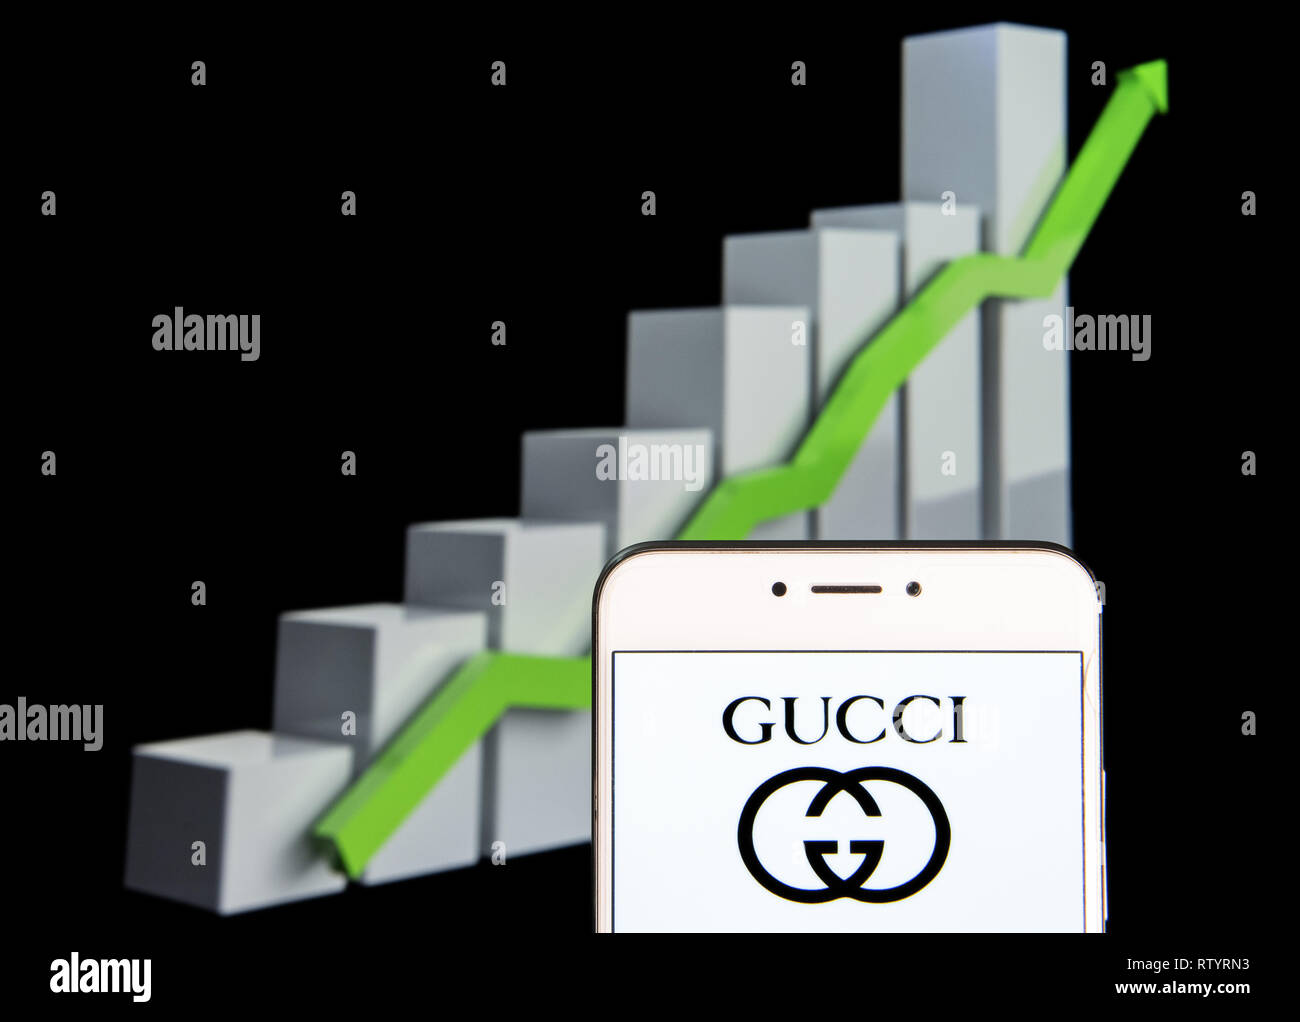 Gucci Stock Chart